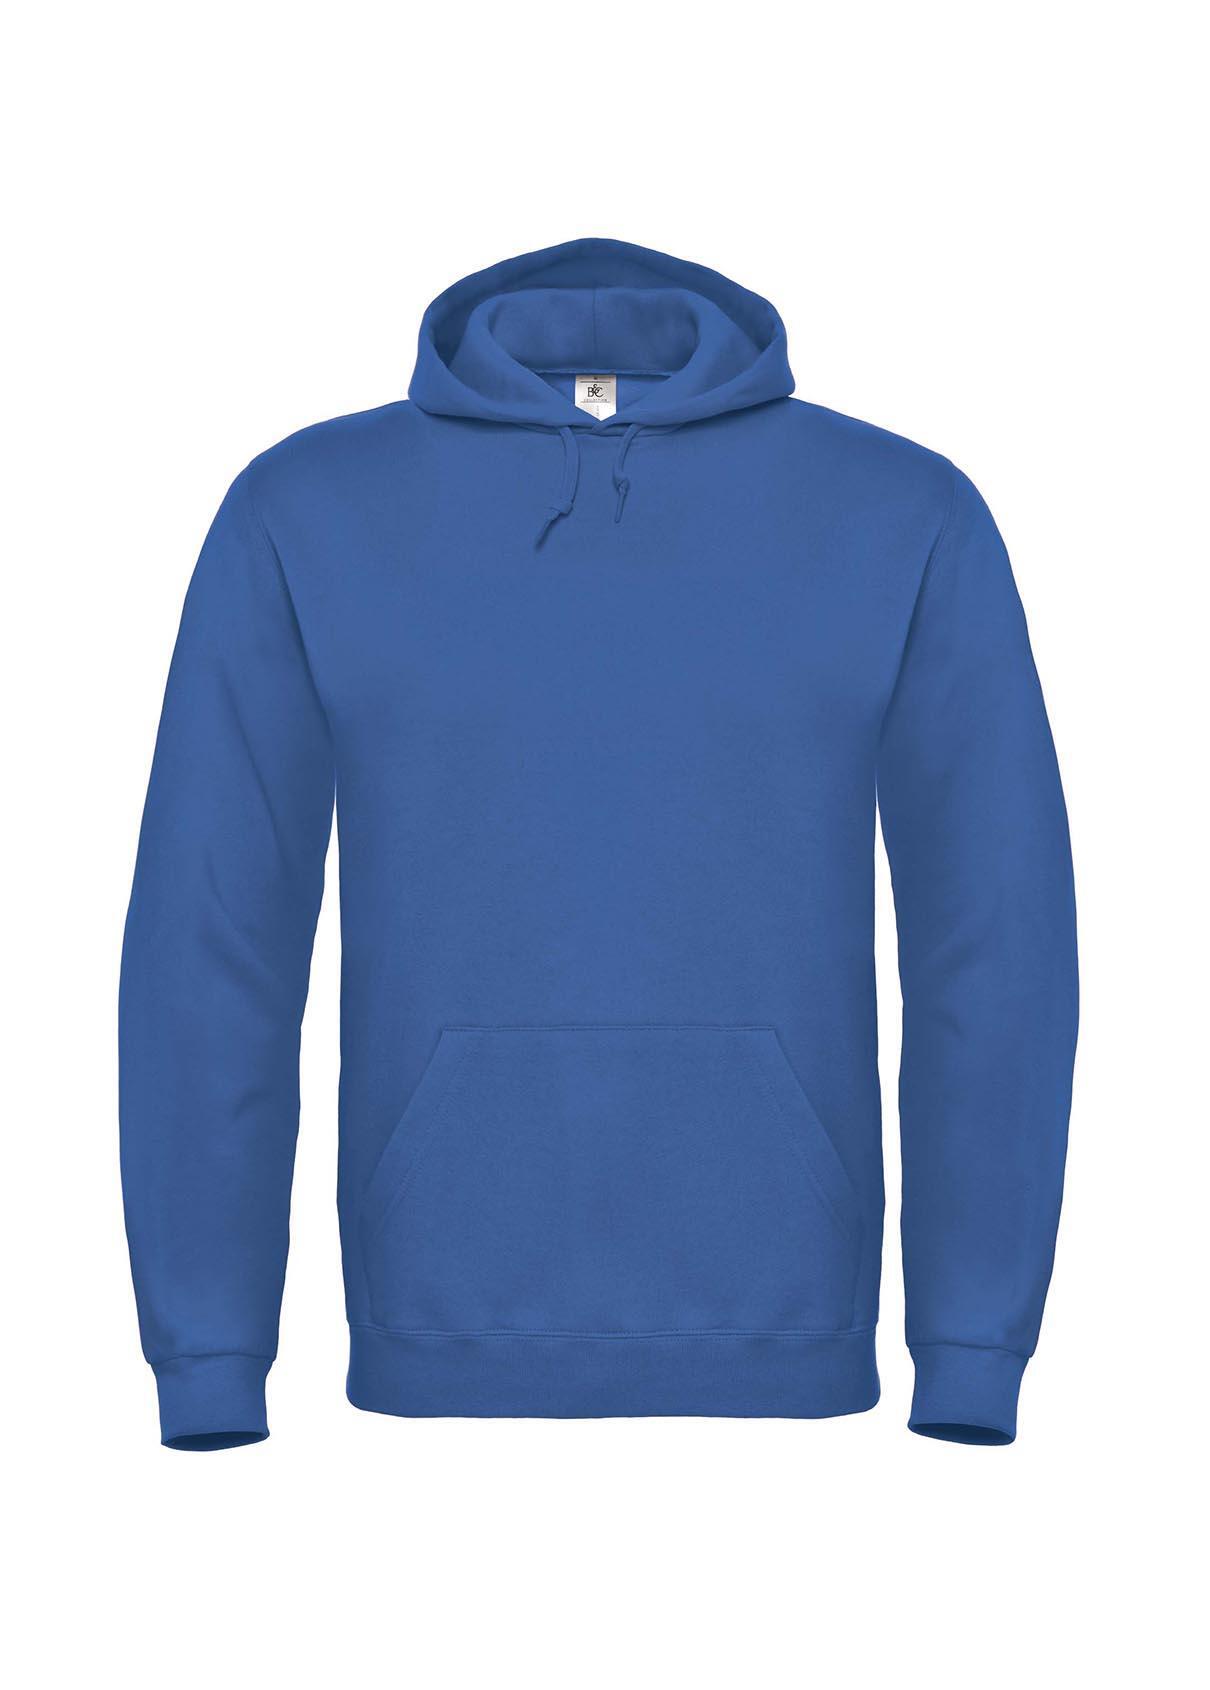 Blauwe Hoodie sweater voor mannen bedrukbaar